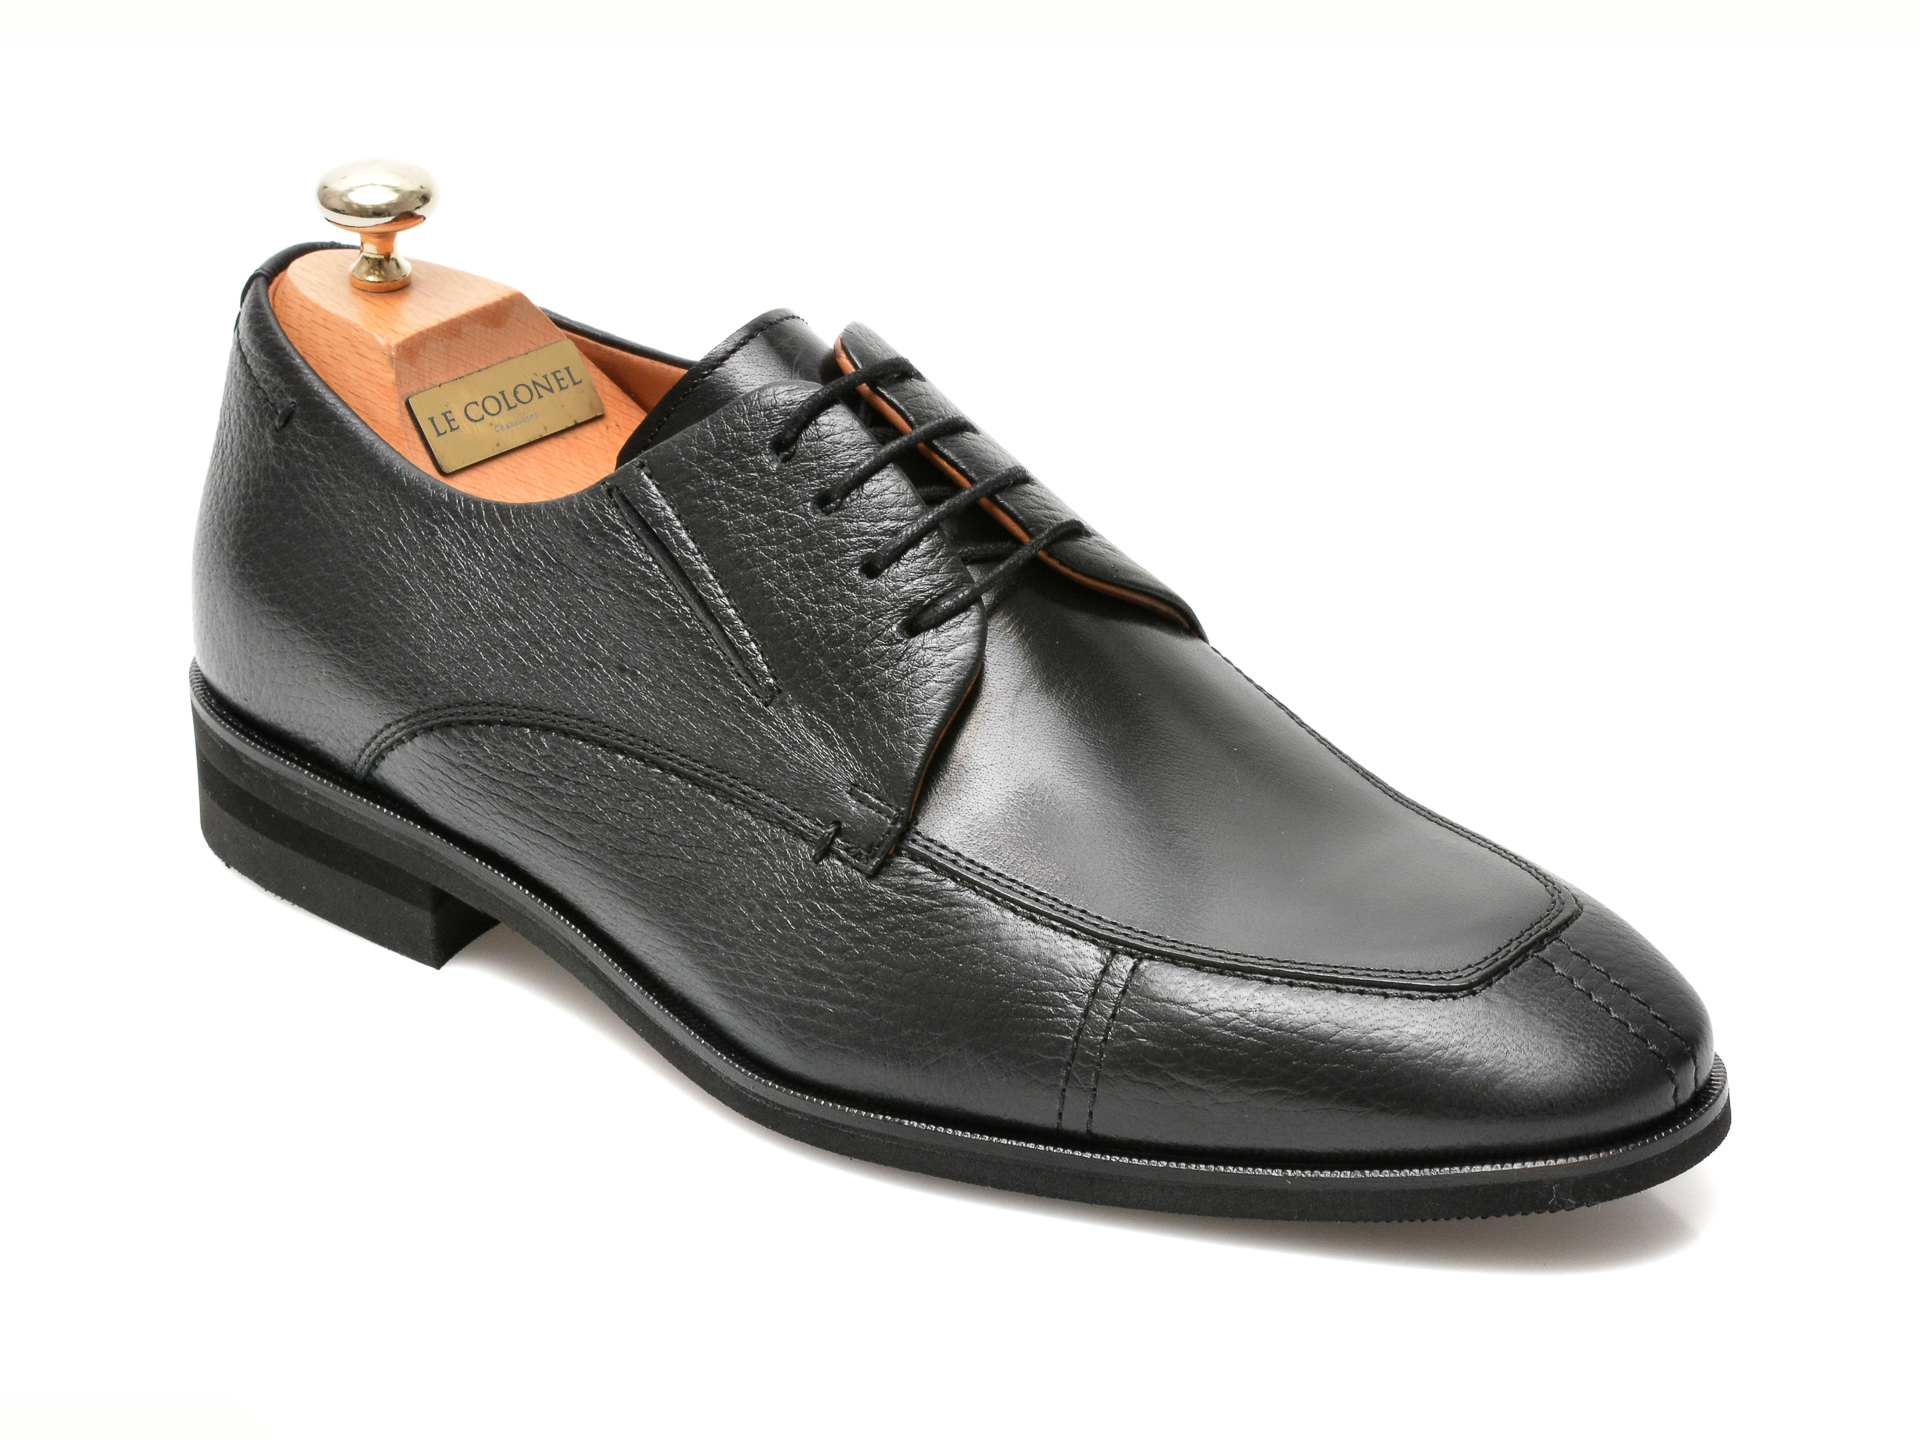 Pantofi LE COLONEL negri, 48761, din piele naturala Le Colonel imagine 2022 reducere